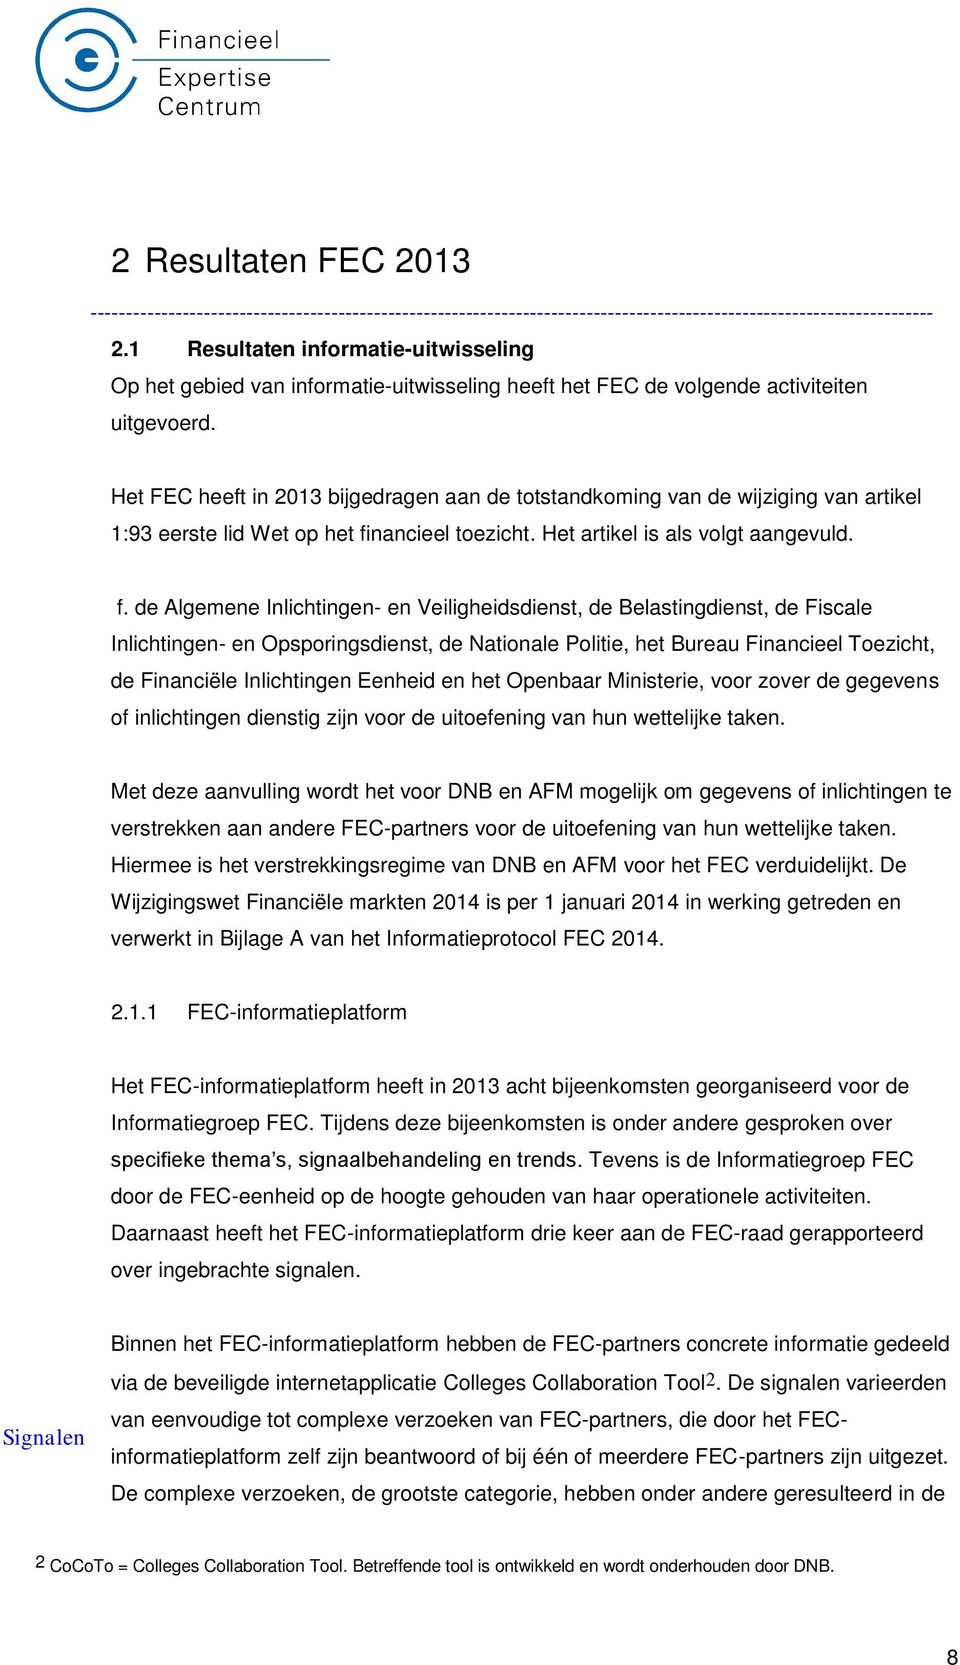 Het FEC heeft in 2013 bijgedragen aan de totstandkoming van de wijziging van artikel 1:93 eerste lid Wet op het fi